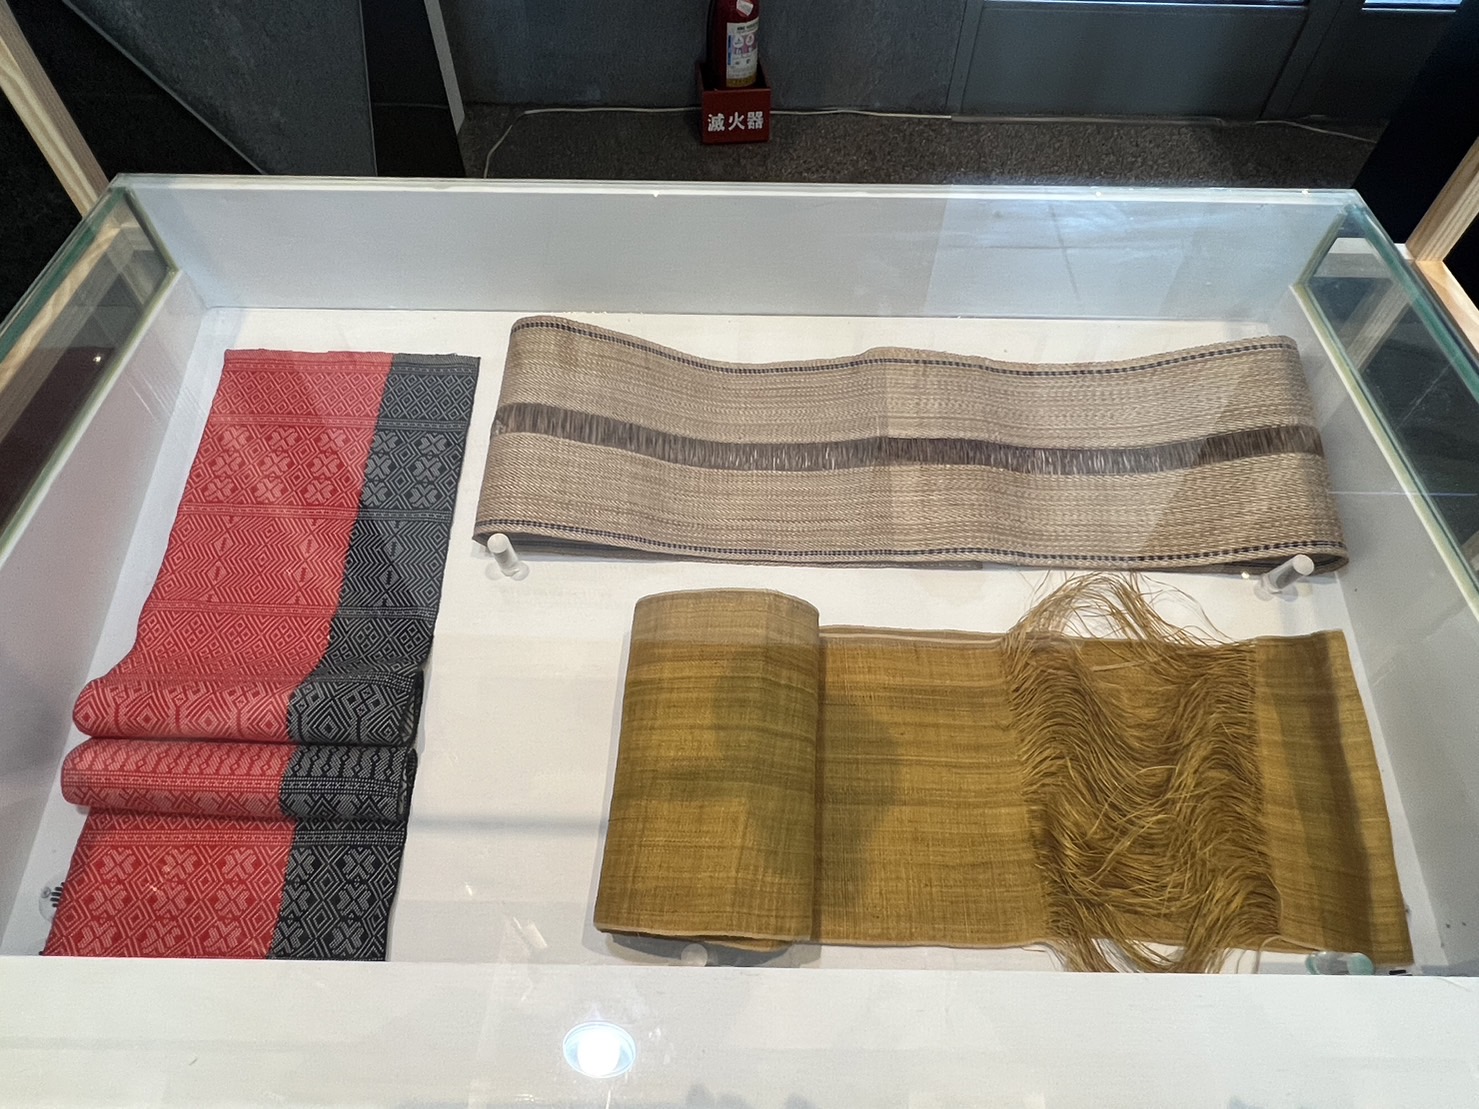 由臺北市凱達格蘭文化館典藏的香蕉絲織布，更是獨步全球的織布工藝。